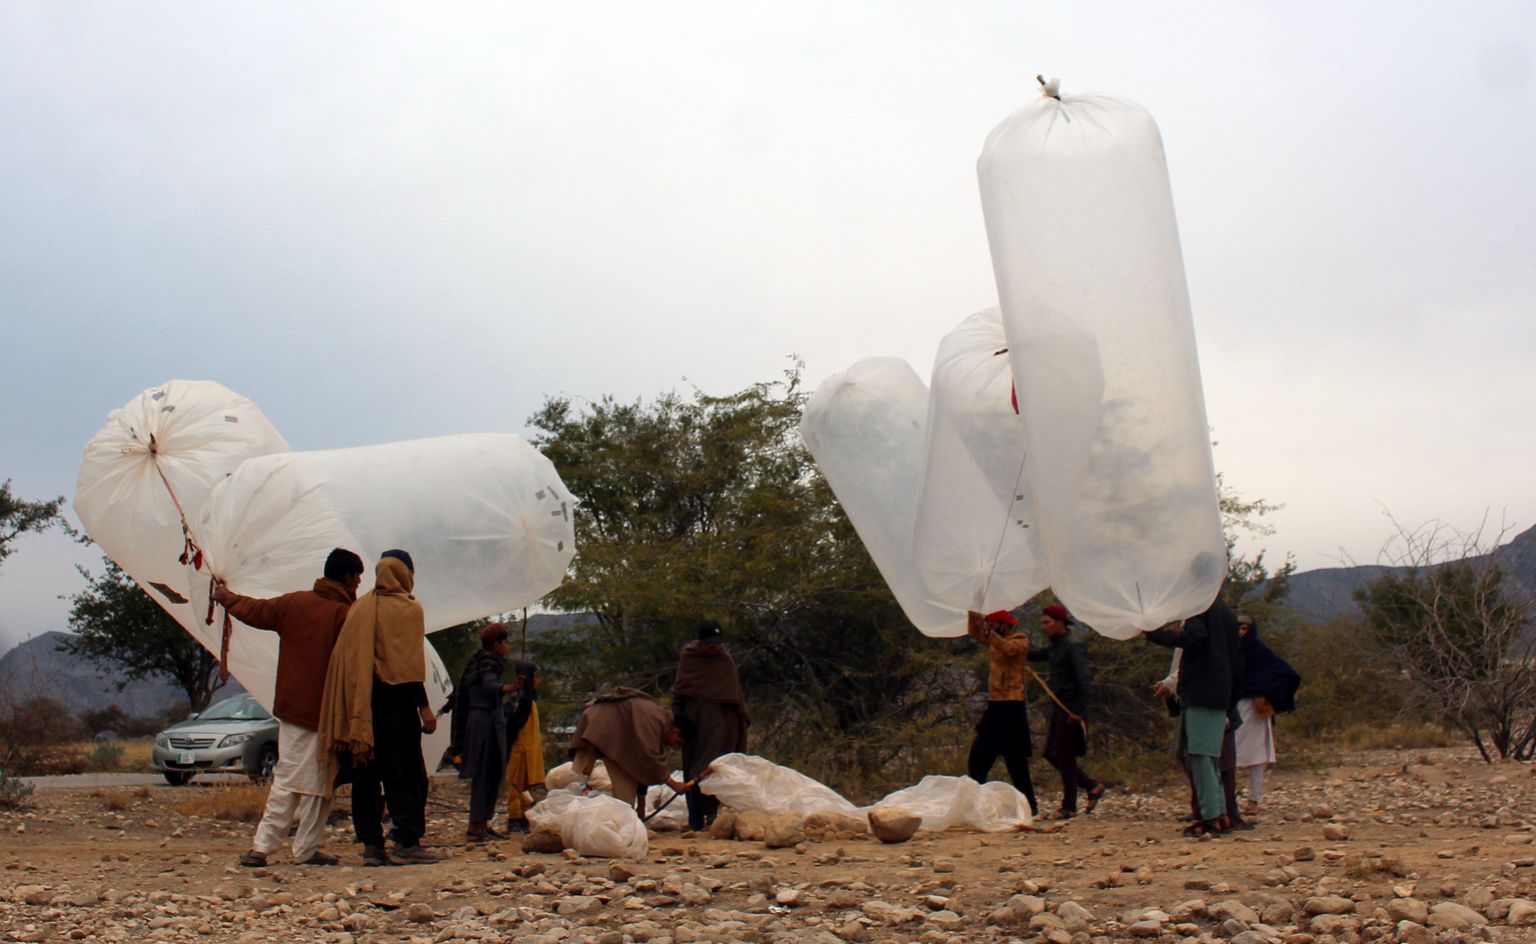 Kohalikud elanikud täidavad Pakistanis Karaki piirkonnas, mis on tuntud rikkalike maagaasi- ja naftavarude poolest, gaasiga kilekotte, et nende sisu kodus toidu valmistamiseks kasutada.